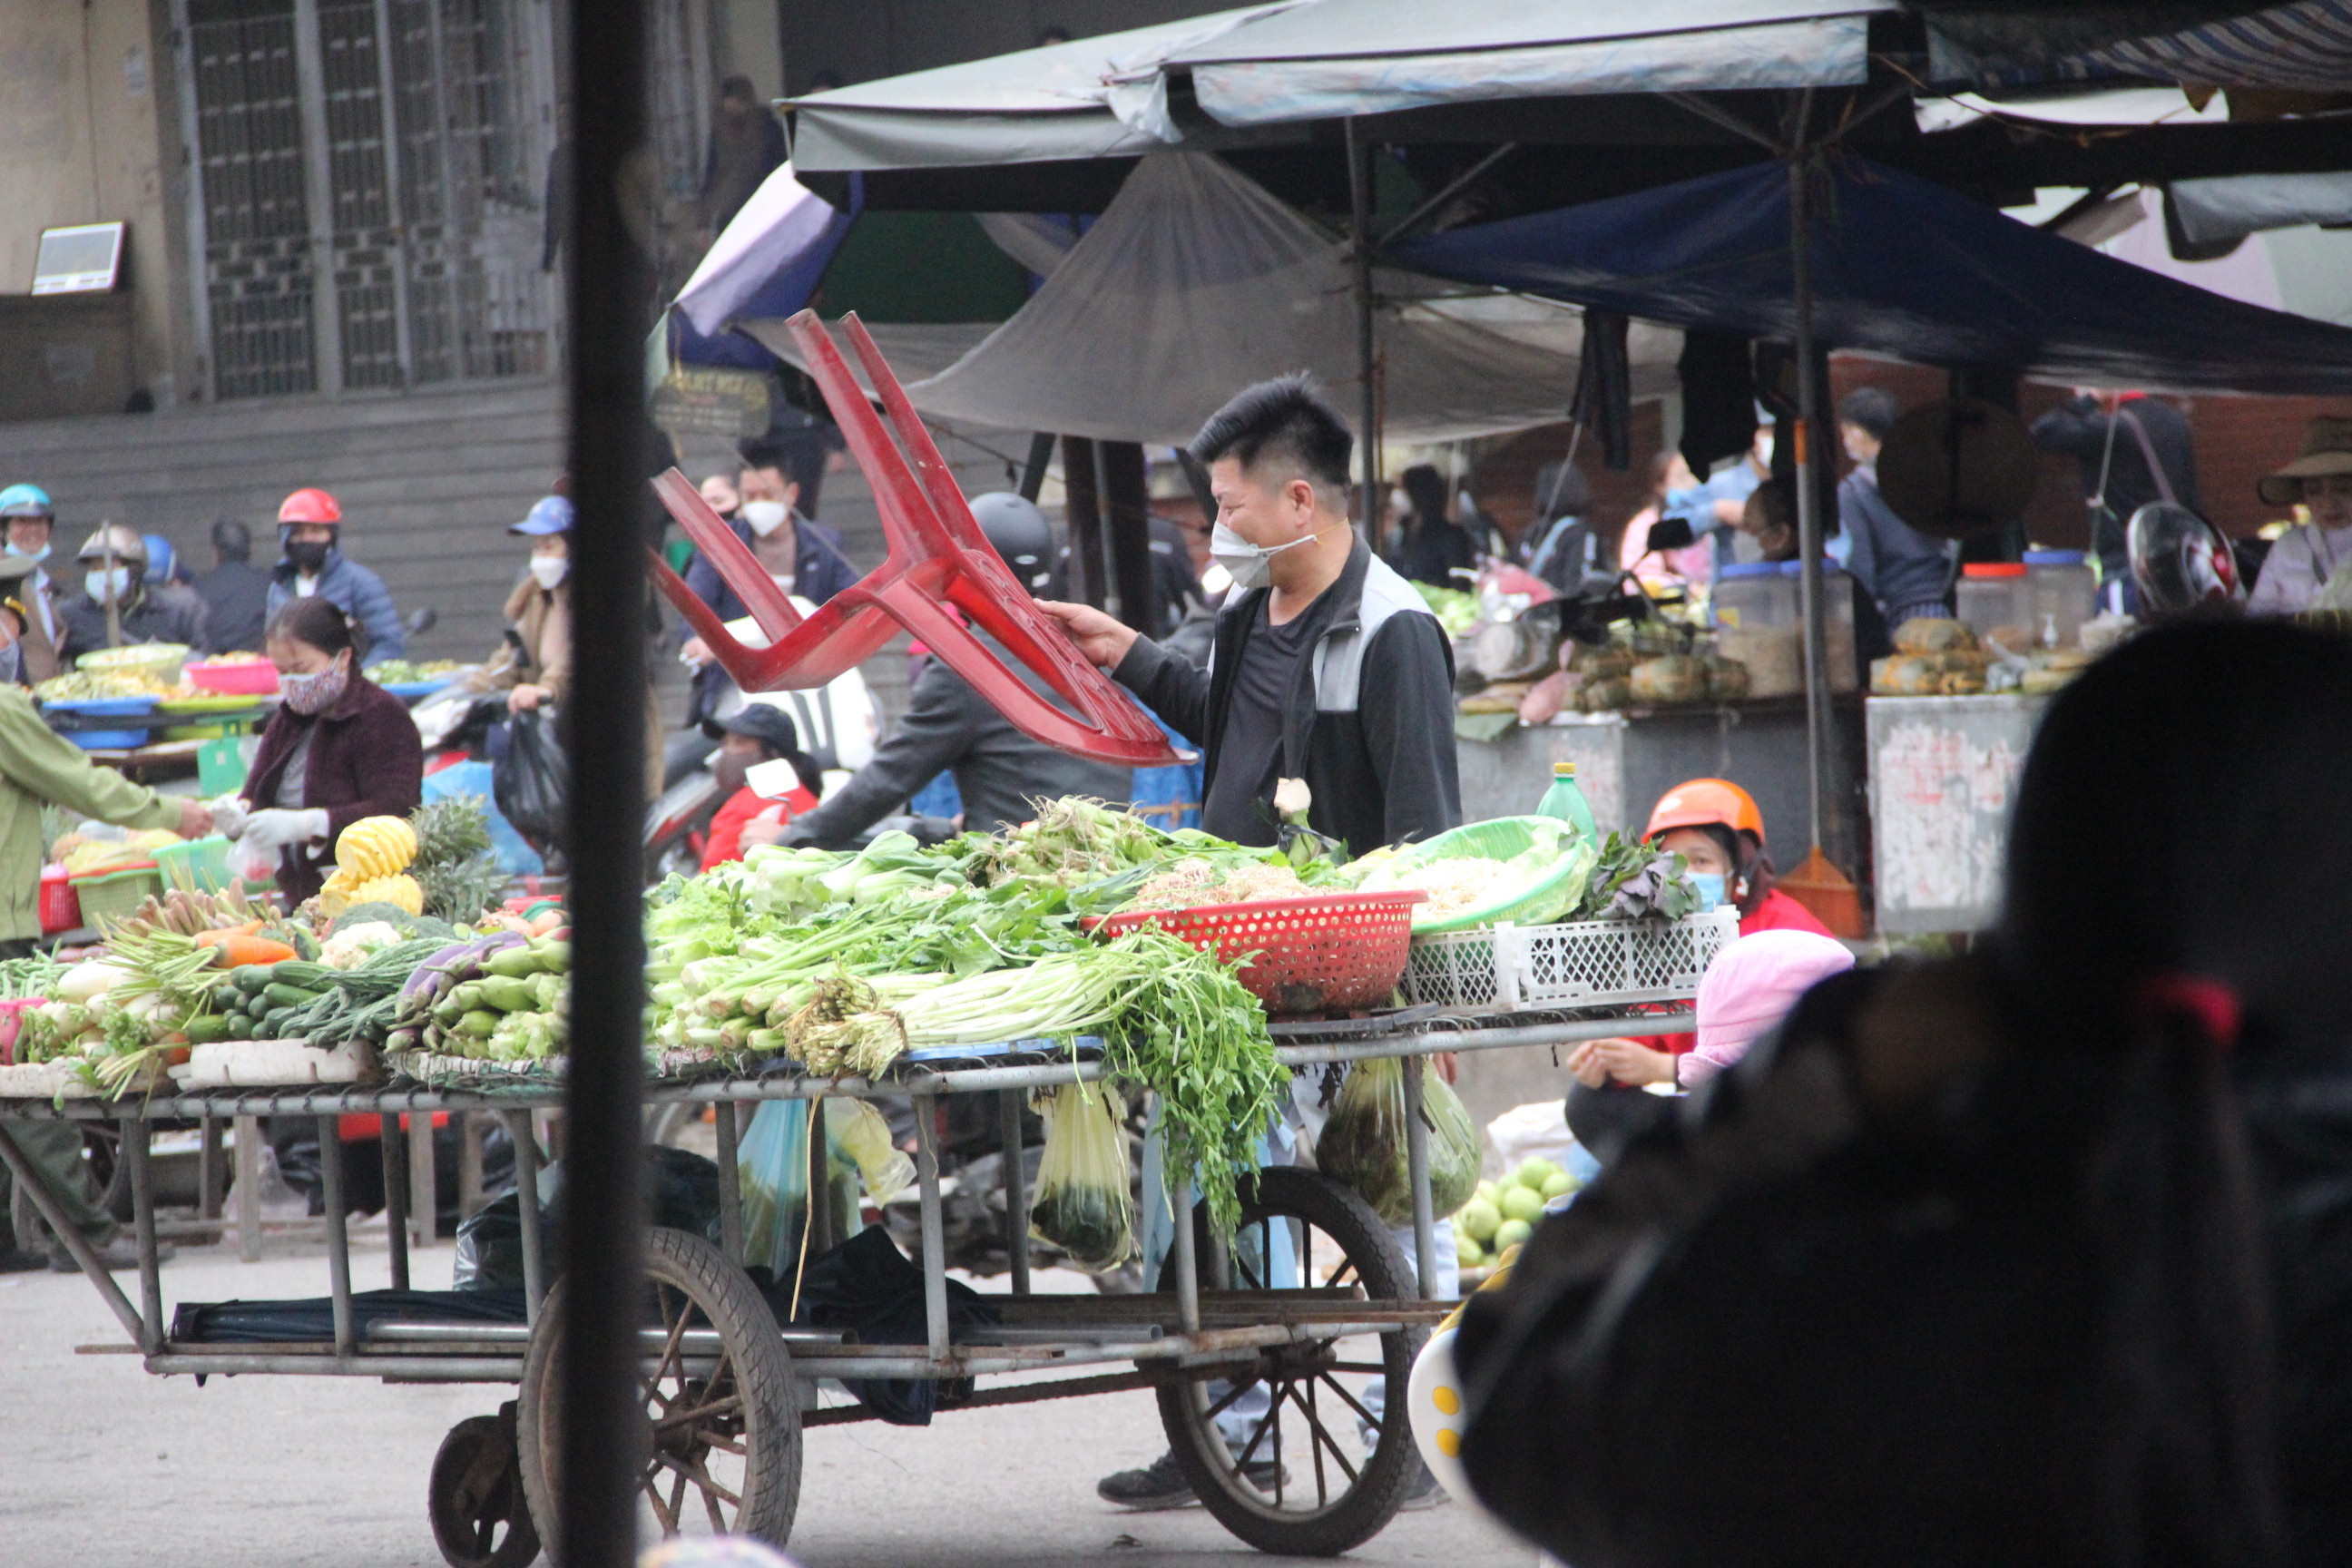 Khoảng thời gian từ 17 giờ chiều trở đi, tiểu thương mang xe đẩy, hàng hóa bày ra giữa đường Lê Hồng Sơn, trước khu vực chợ Vinh và chợ đầu mối. Ảnh: Q.A